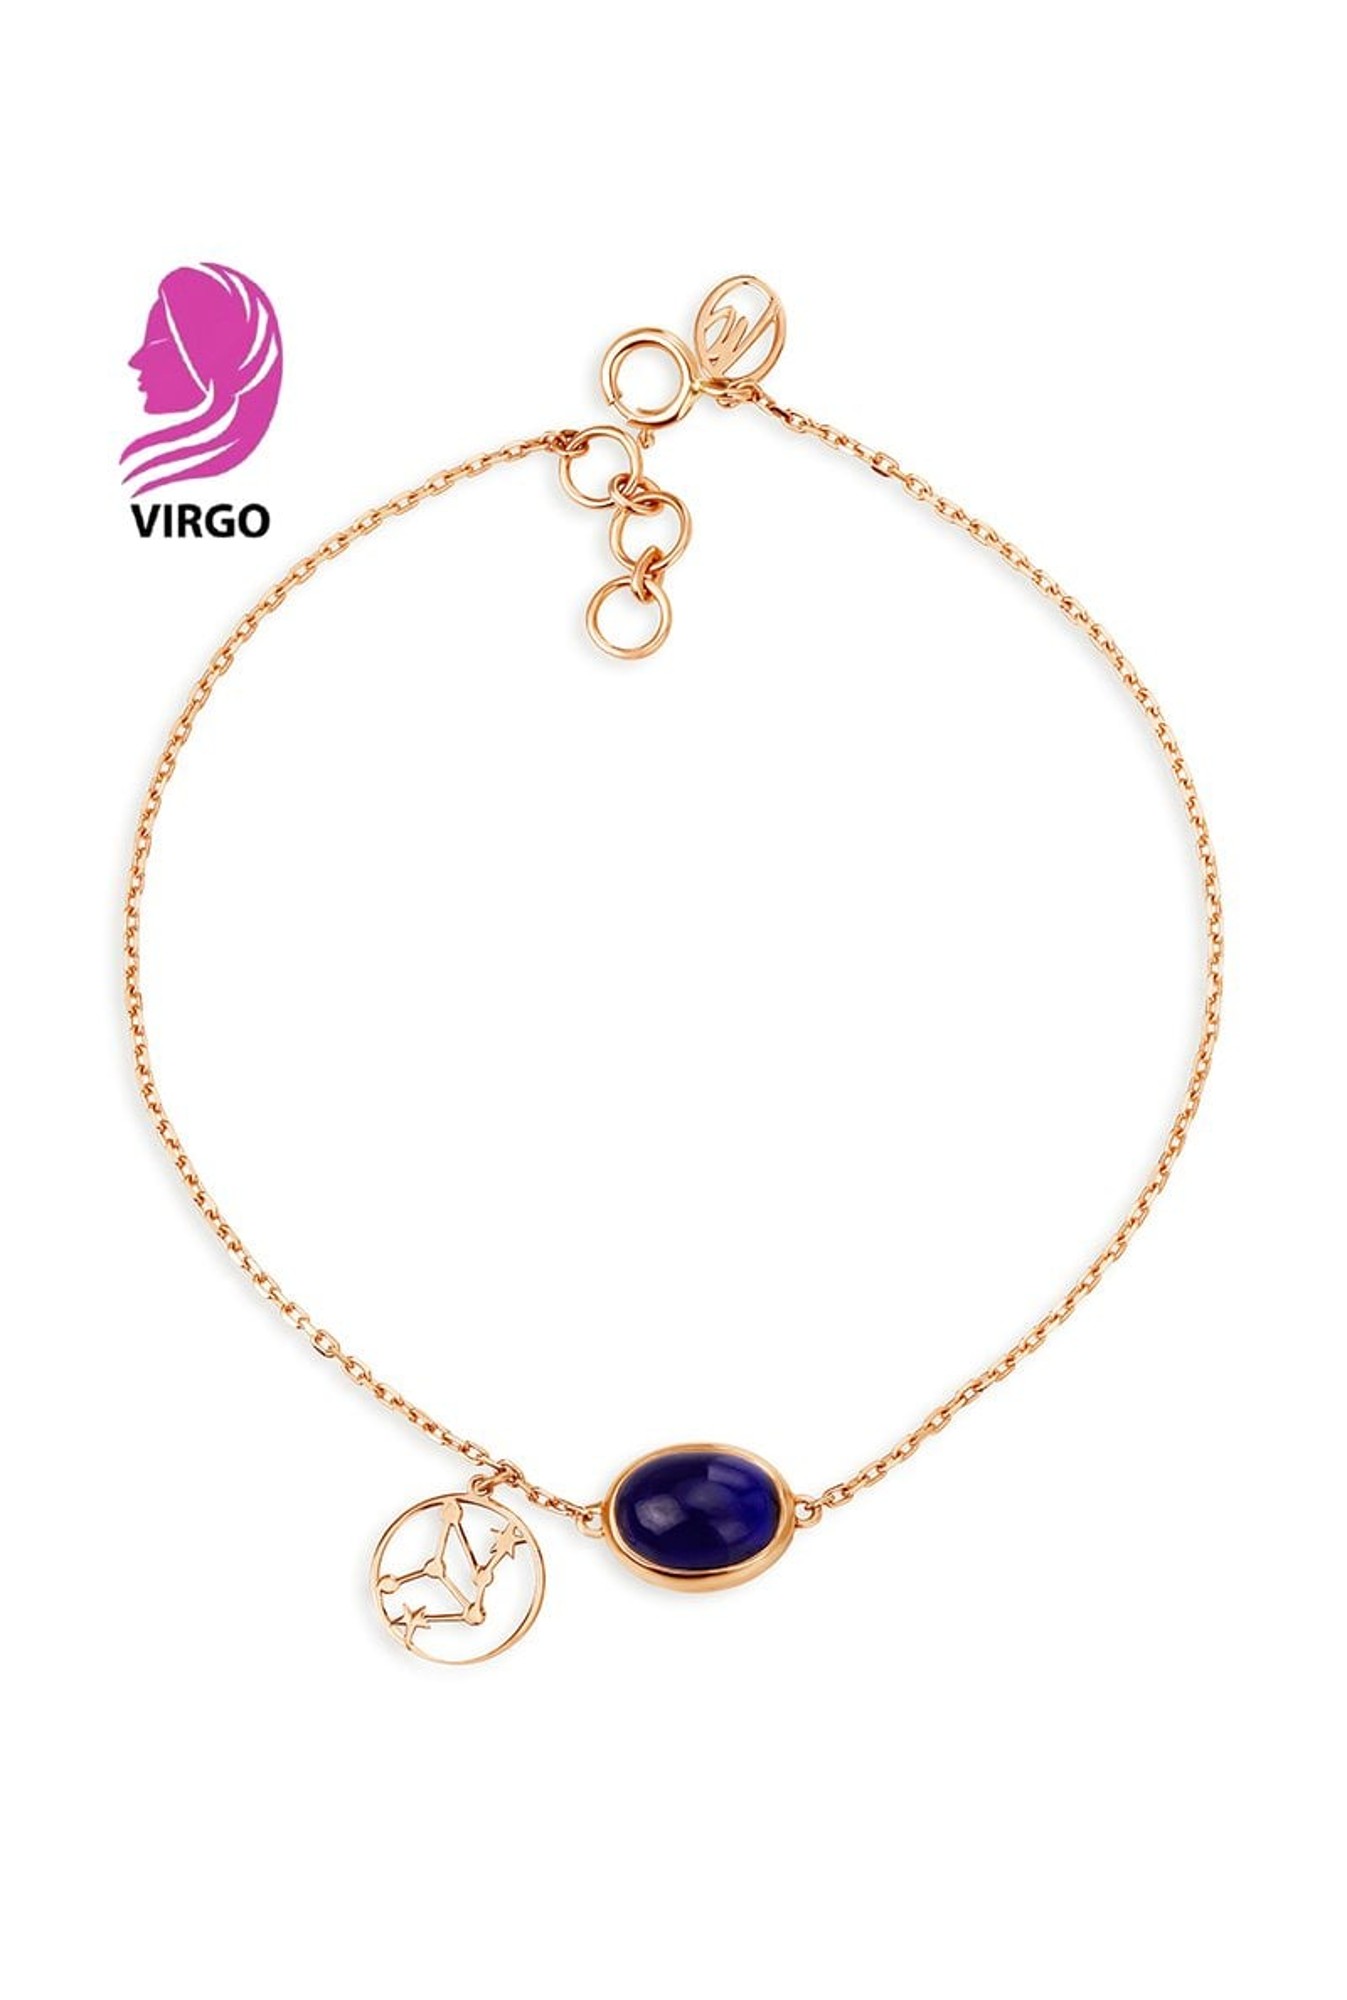 Virgo Zodiac Bracelet - Bunyaad